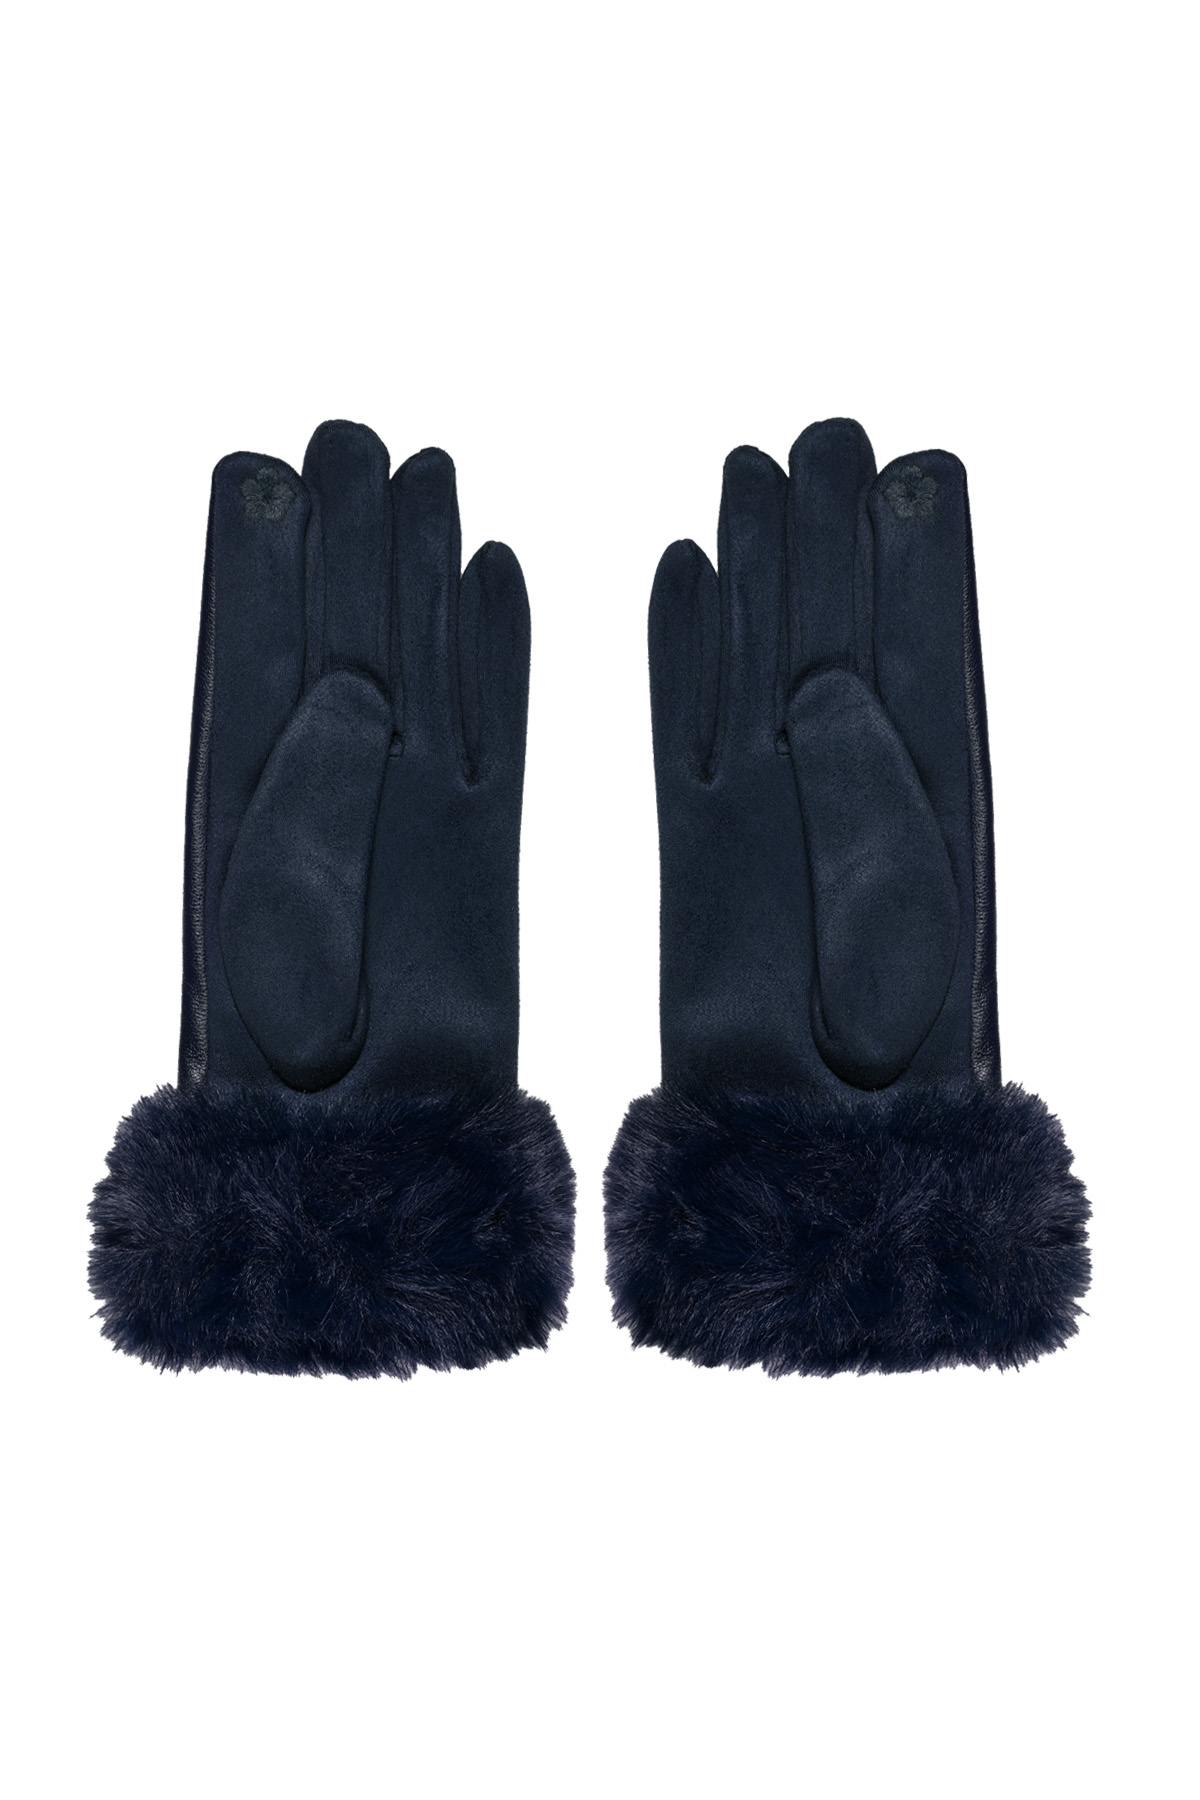 Handschoenen fluf - navy blauw Afbeelding3